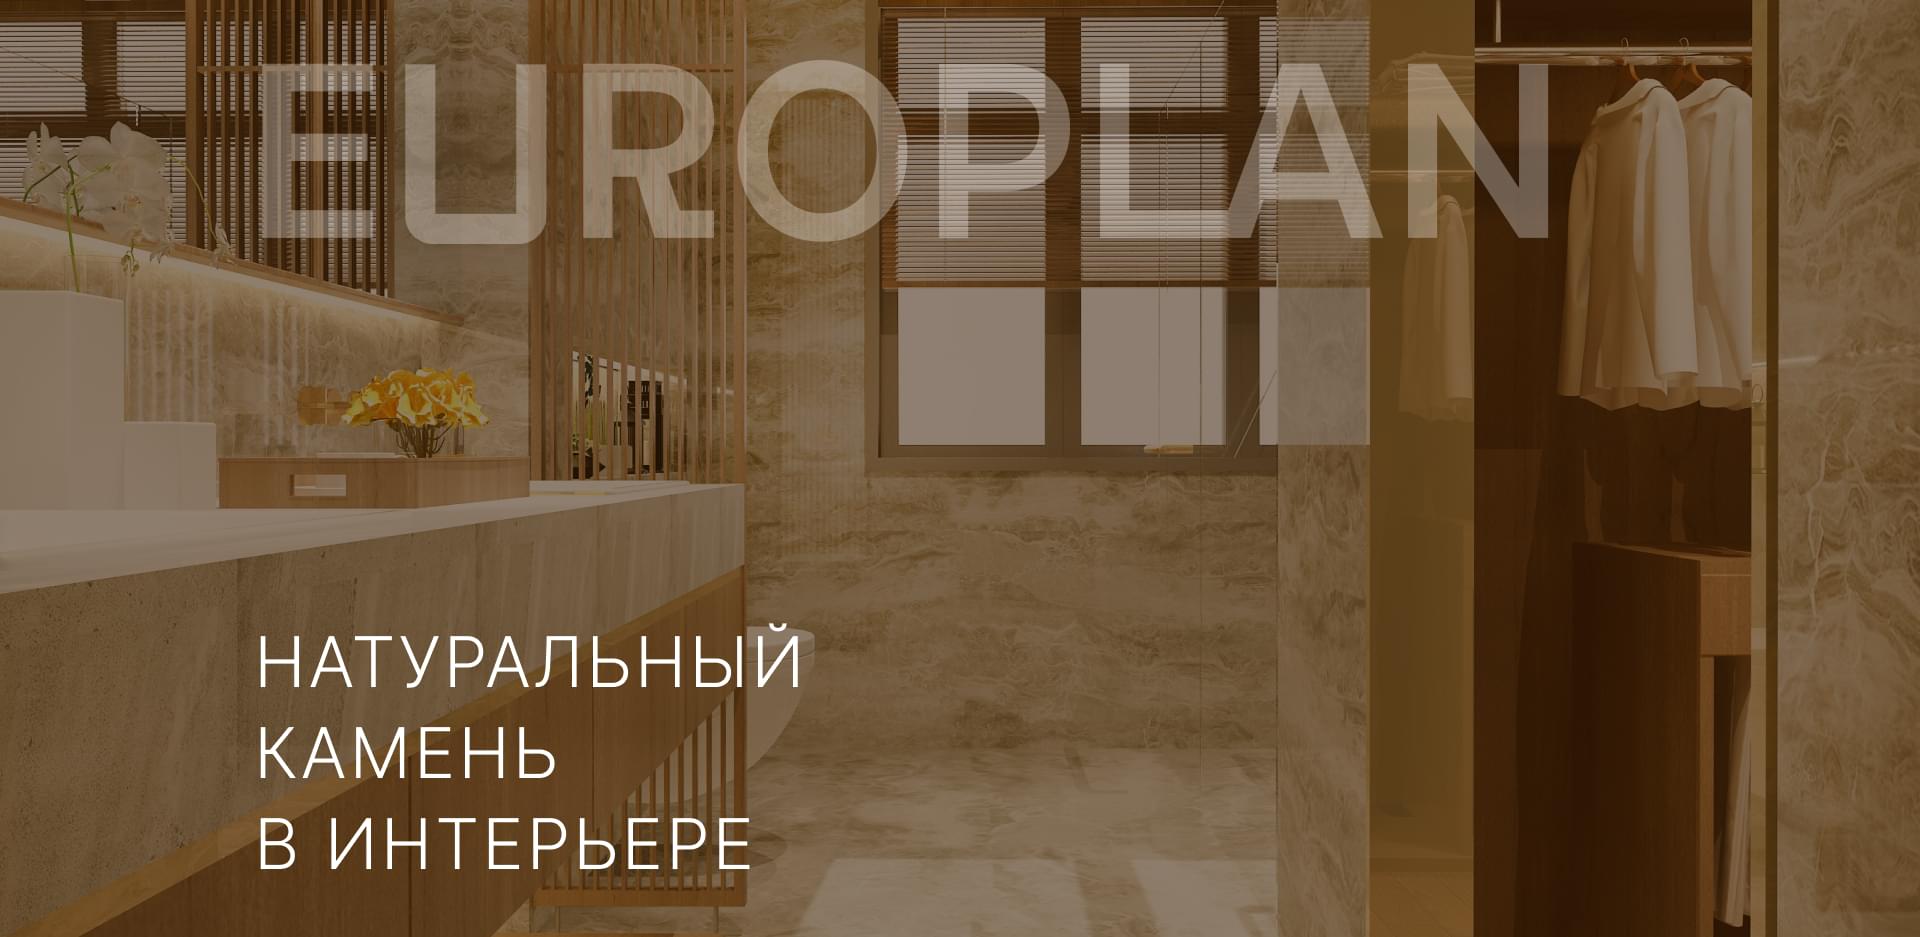 Экран 1 Europlan